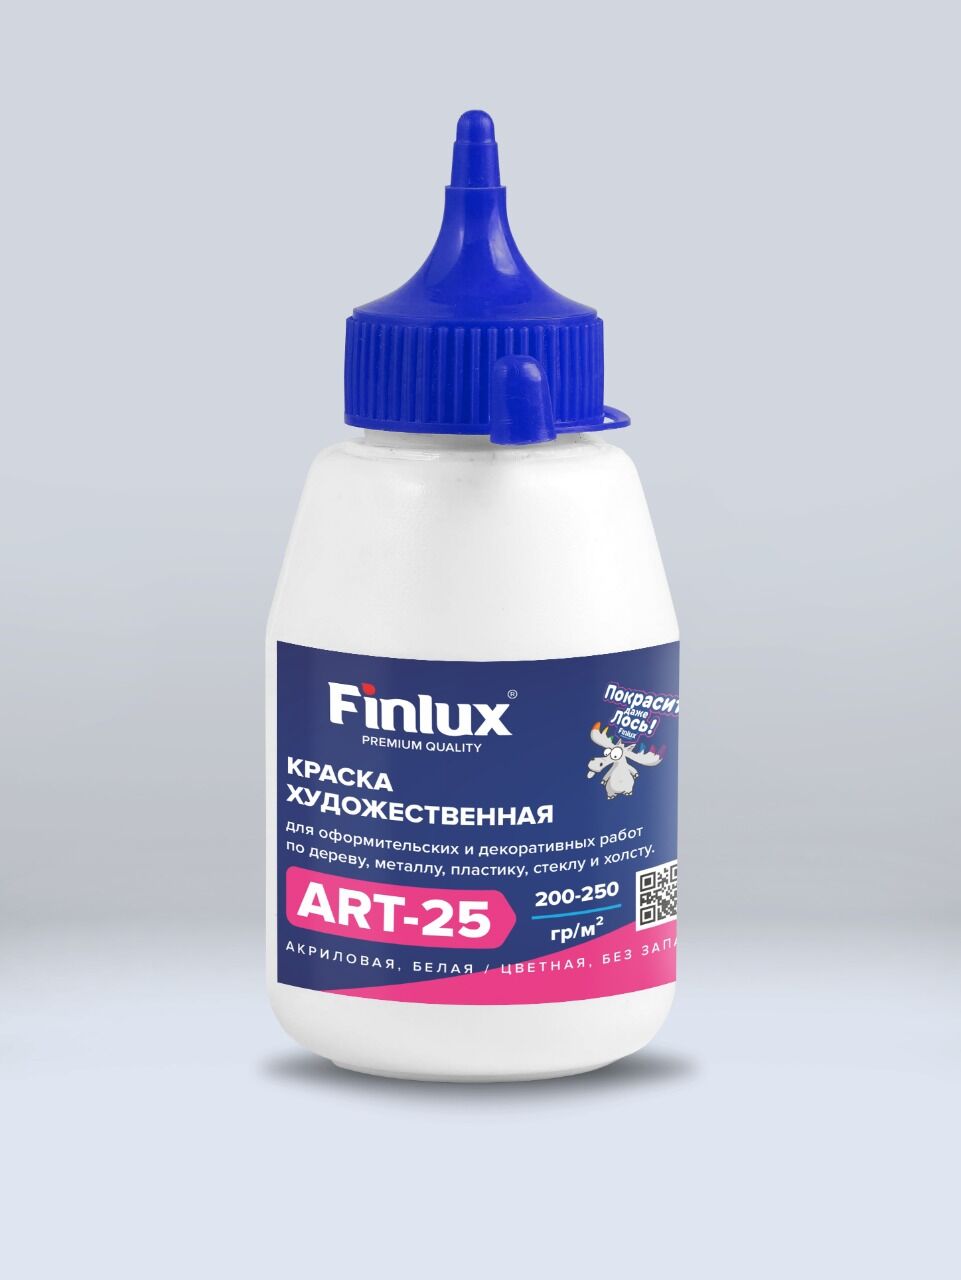 Акриловая краска художественная для рисования Охра, 0,3 кг Finlux ART 25 –матовая